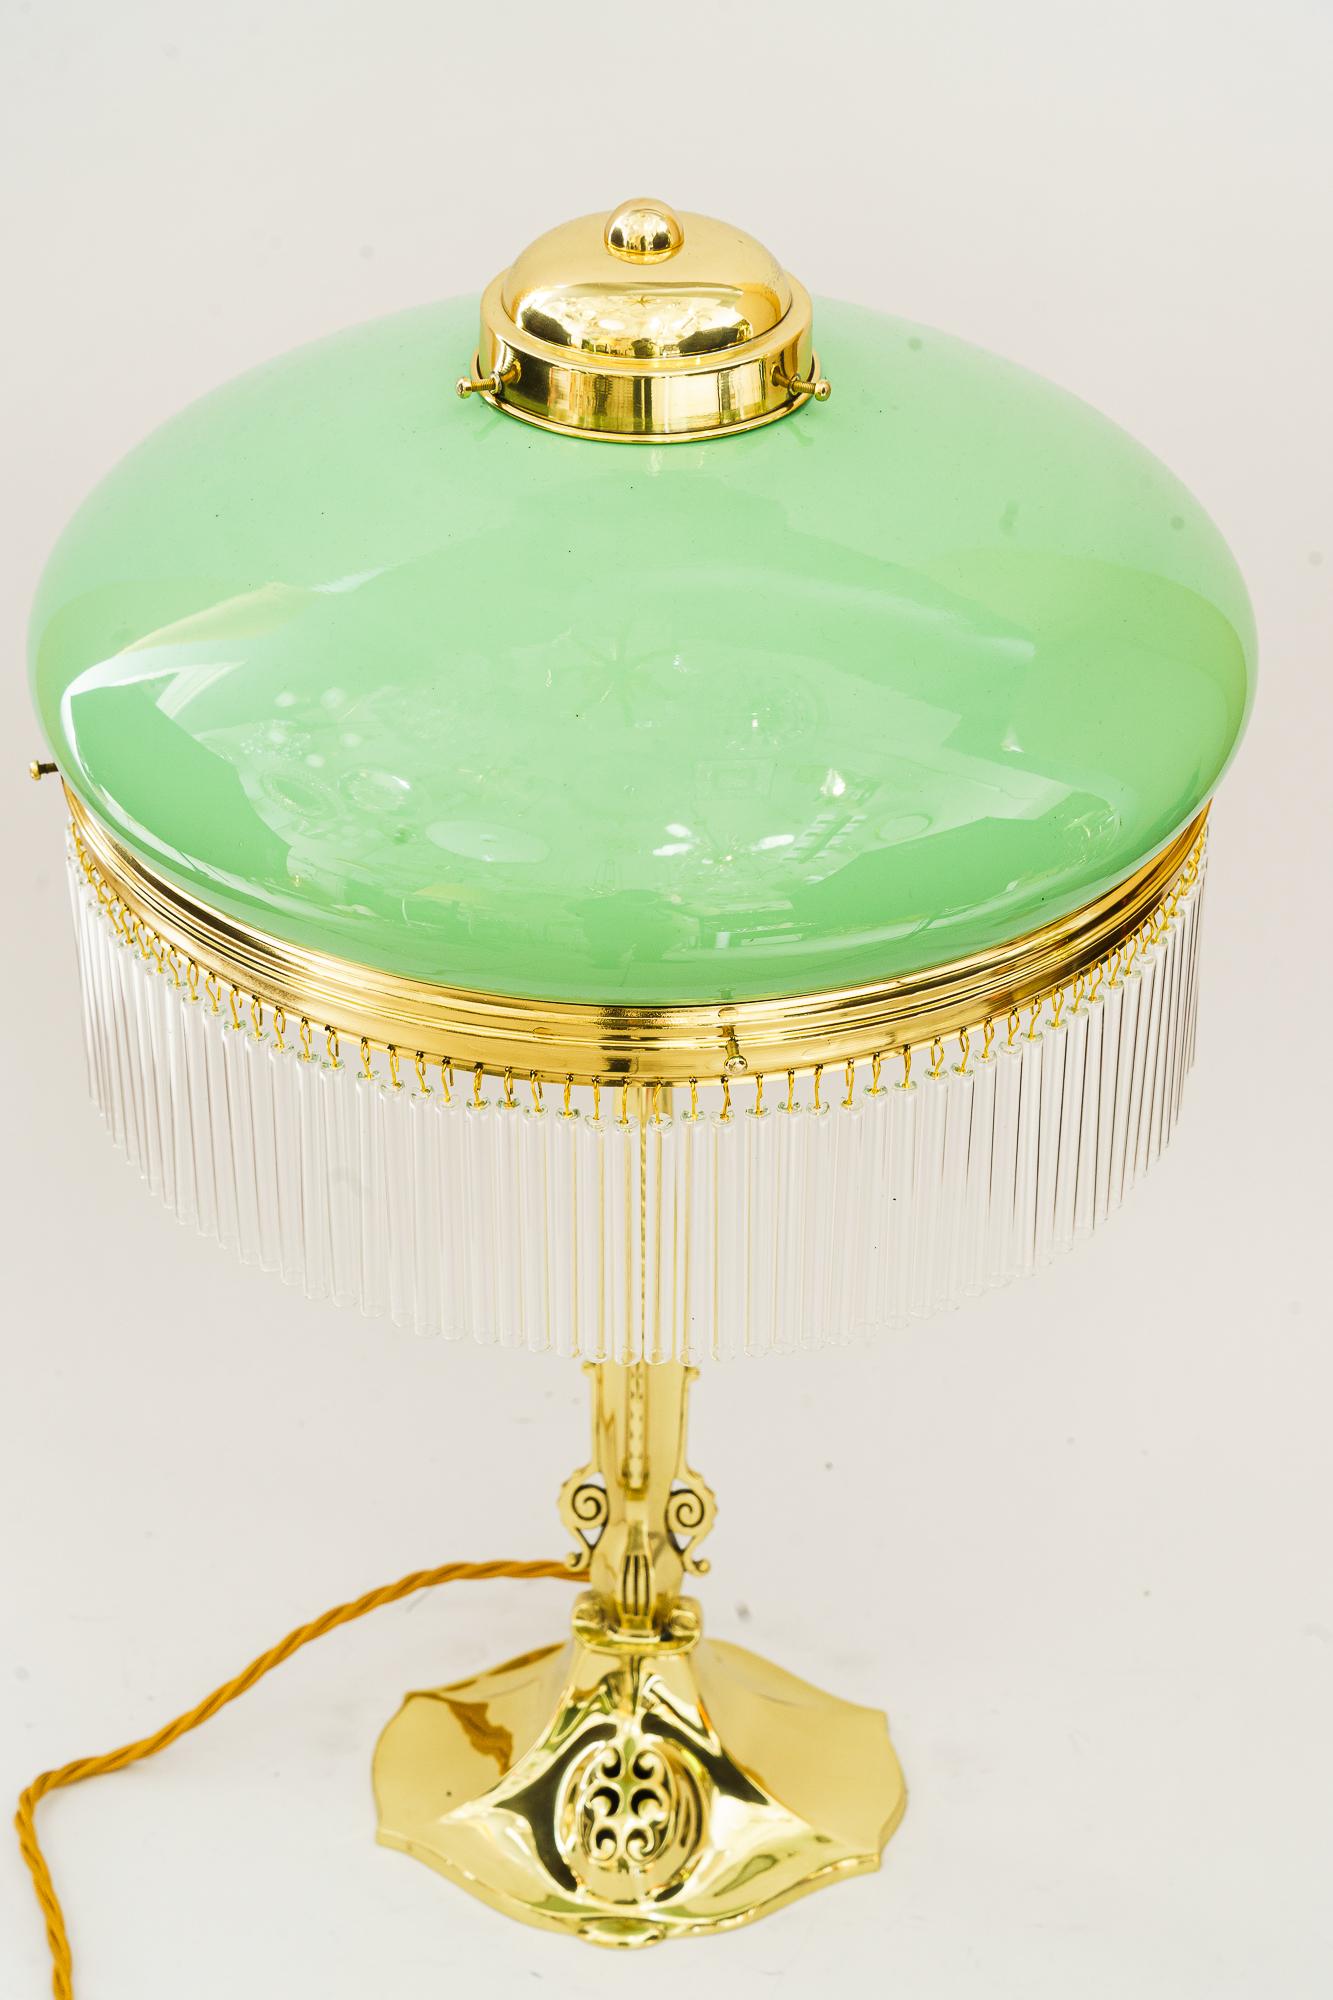 Lampe de table Jugendstil avec abat-jour en verre opale et baguettes en verre vienne vers 1910
Laiton poli et émaillé au four
Abat-jour original en verre opale
Les bâtons de verre sont remplacés (neufs).